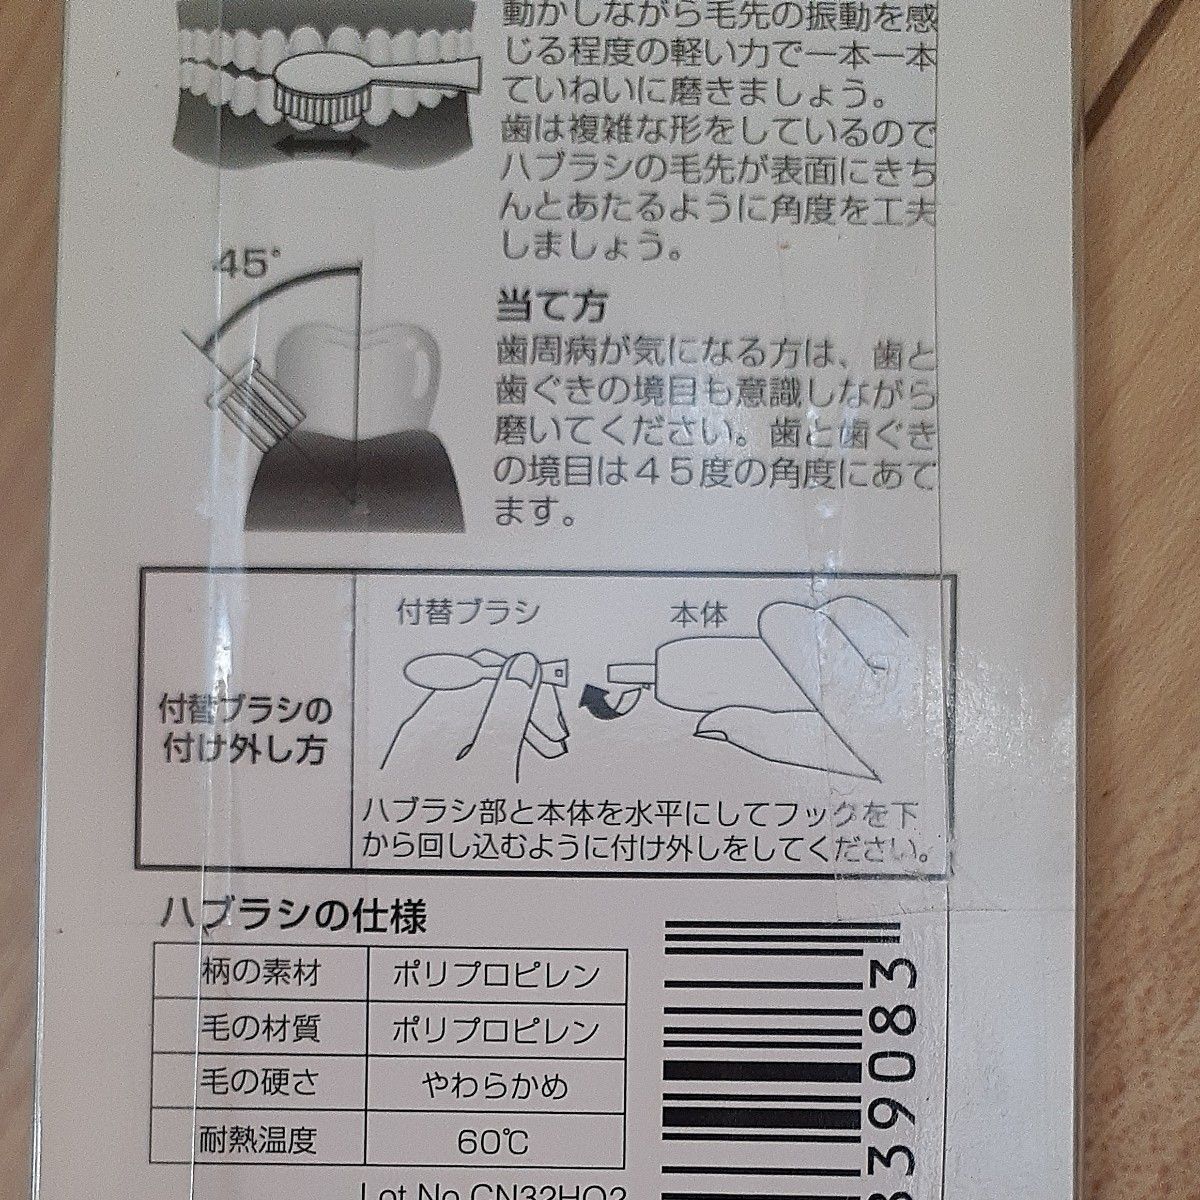 【新品未使用品】電動歯ブラシ 付替えブラシ【5個セット】